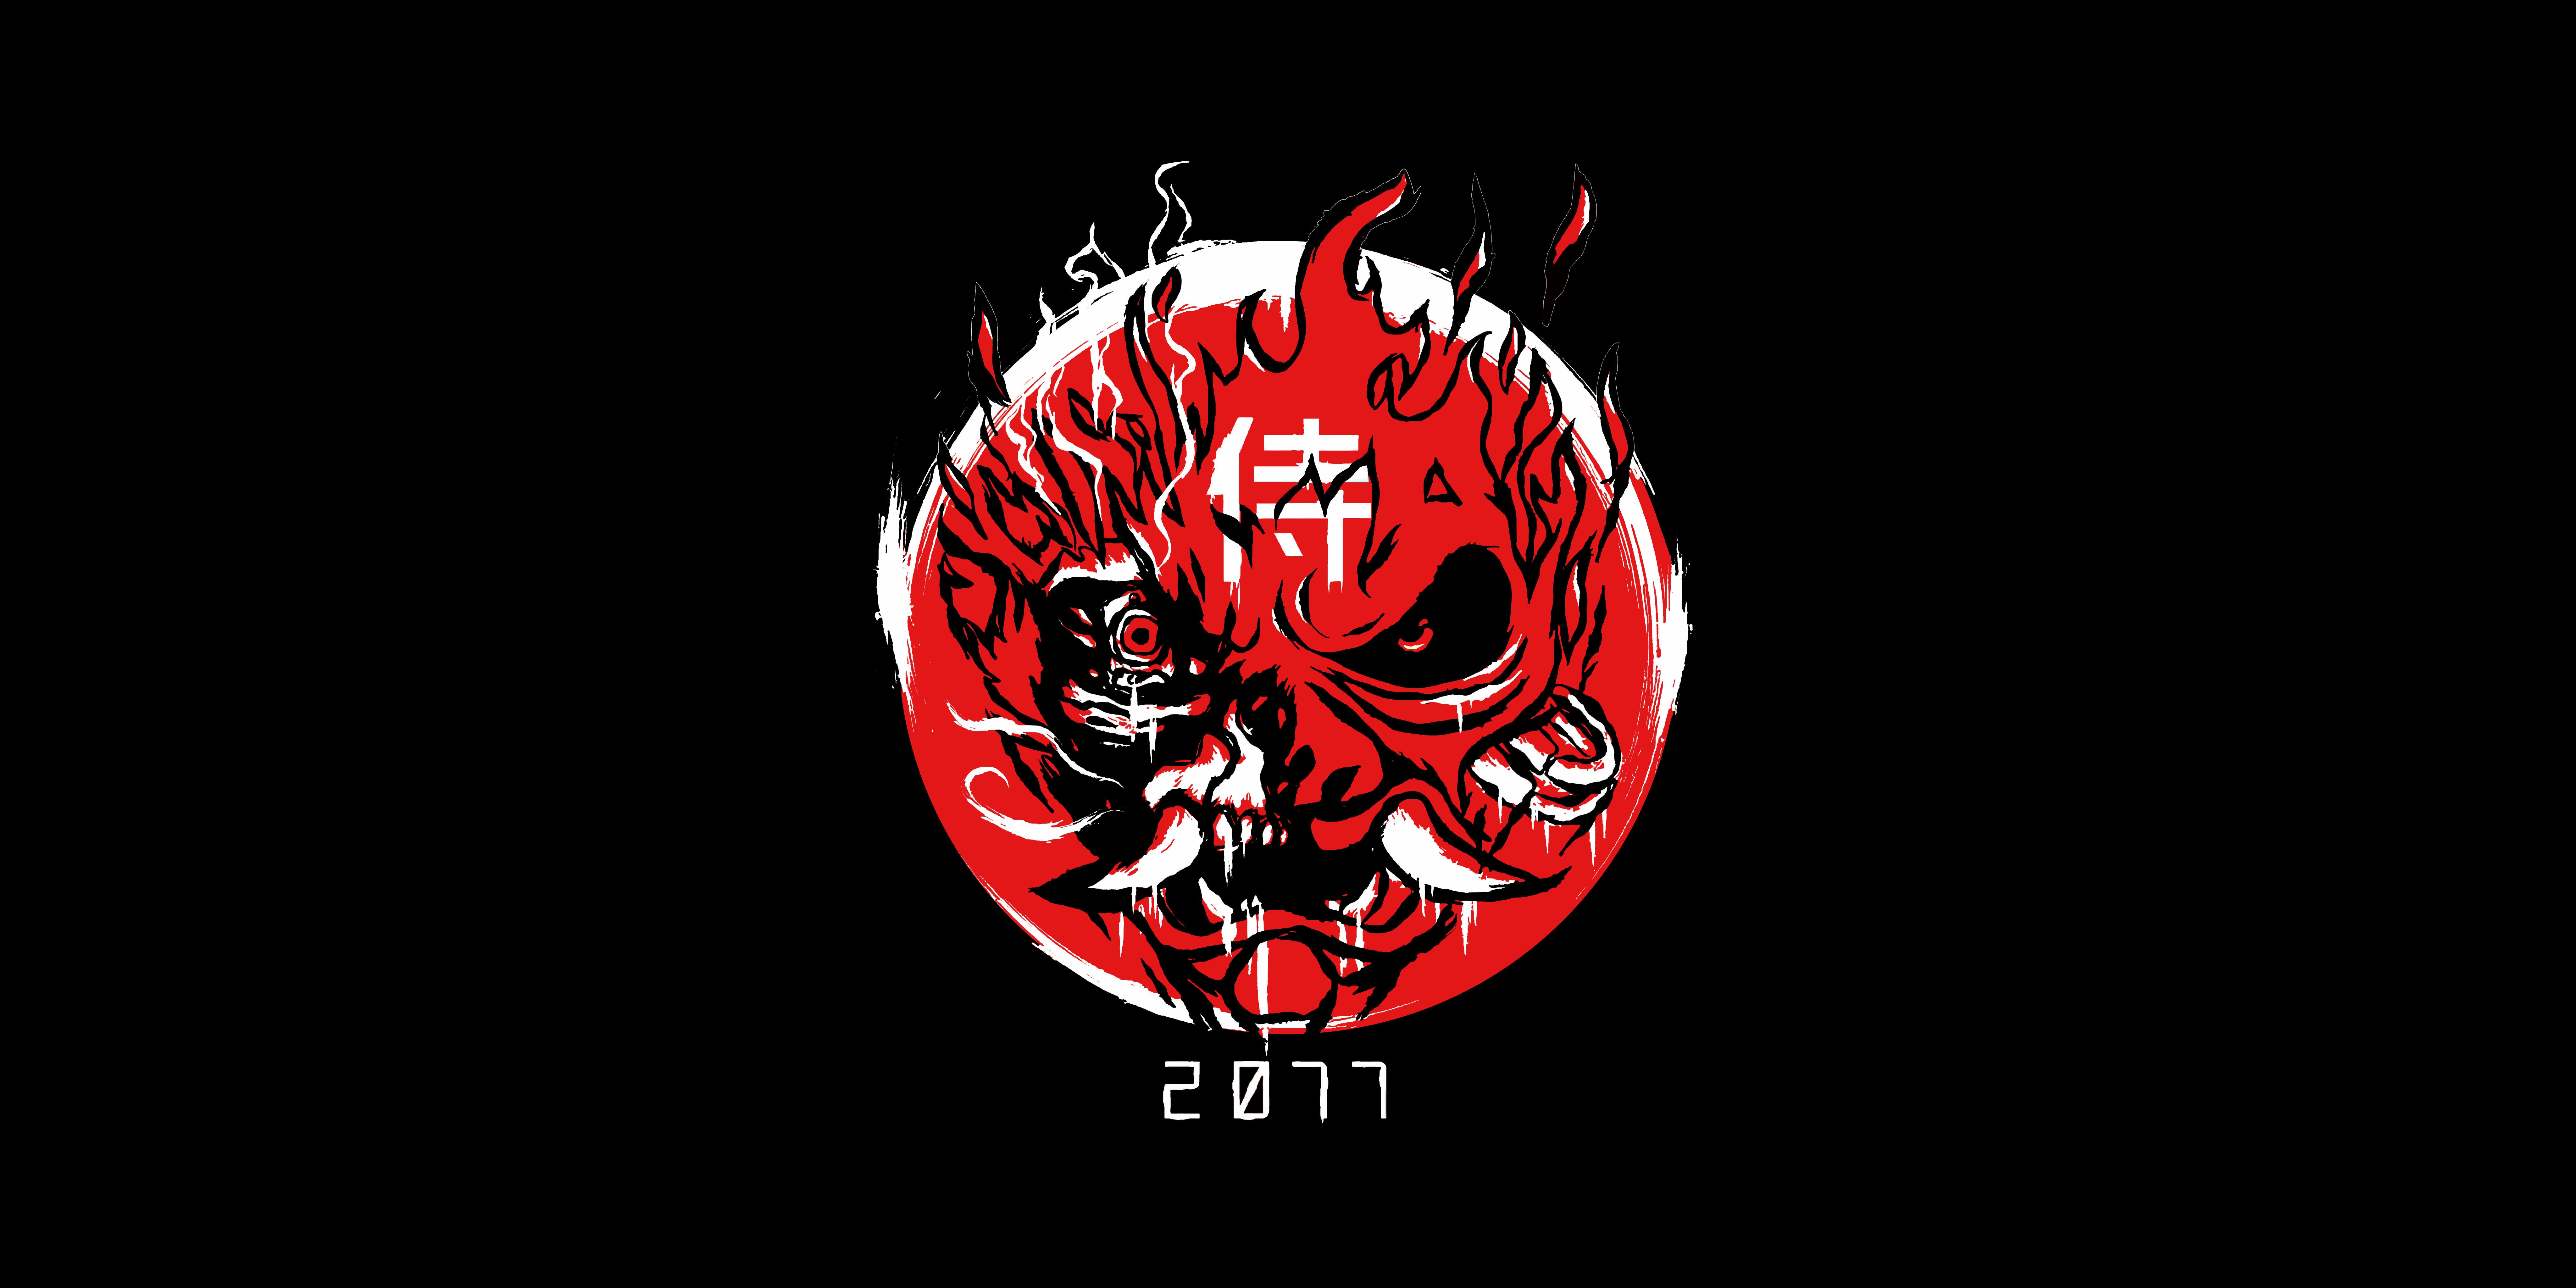 8192 x 4096 · png - Cd Projekt Red Samurai Logo Cyberpunk 2077 Samurai Wallpaper ...